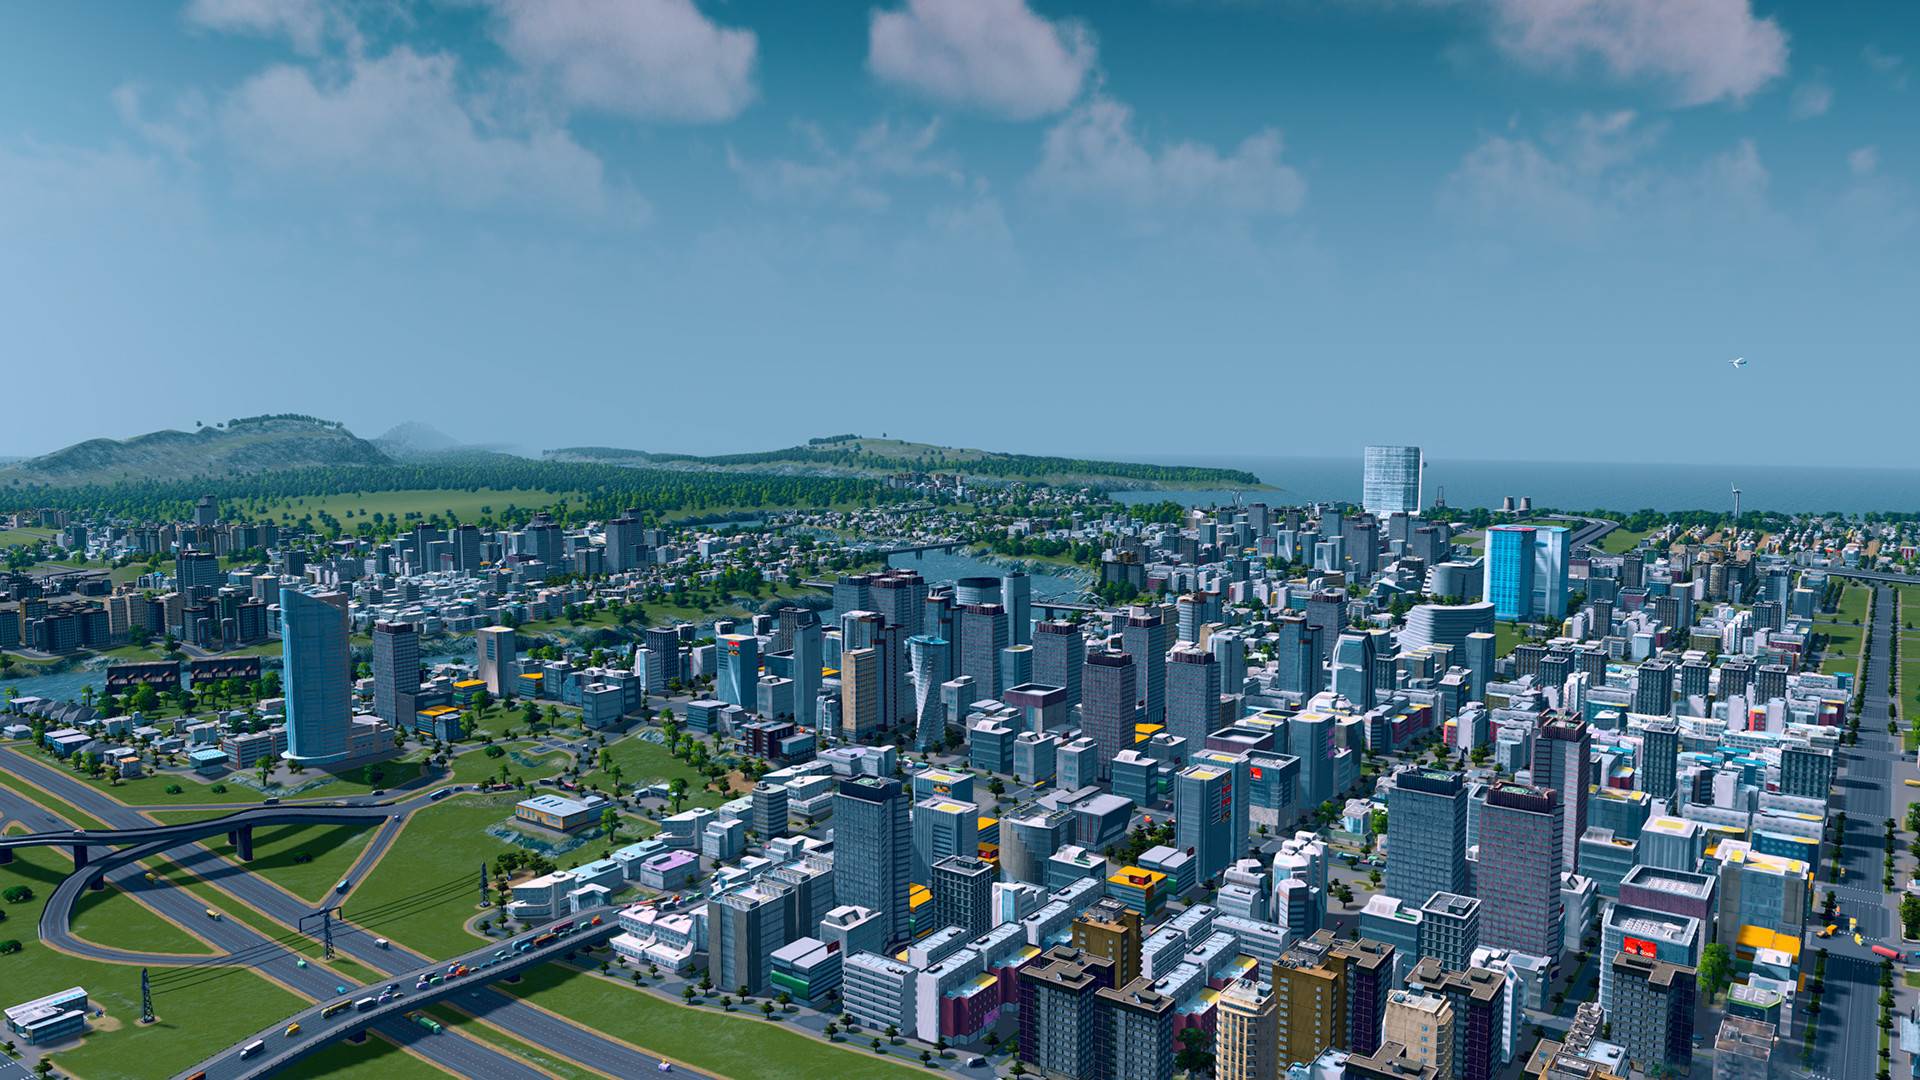 सर्वोत्कृष्ट शहर-बांधकाम खेळ: शहरे: स्कायलिन्स. प्रतिमा गगनचुंबी इमारतींनी भरलेले एक विस्तृत शहर दर्शविते